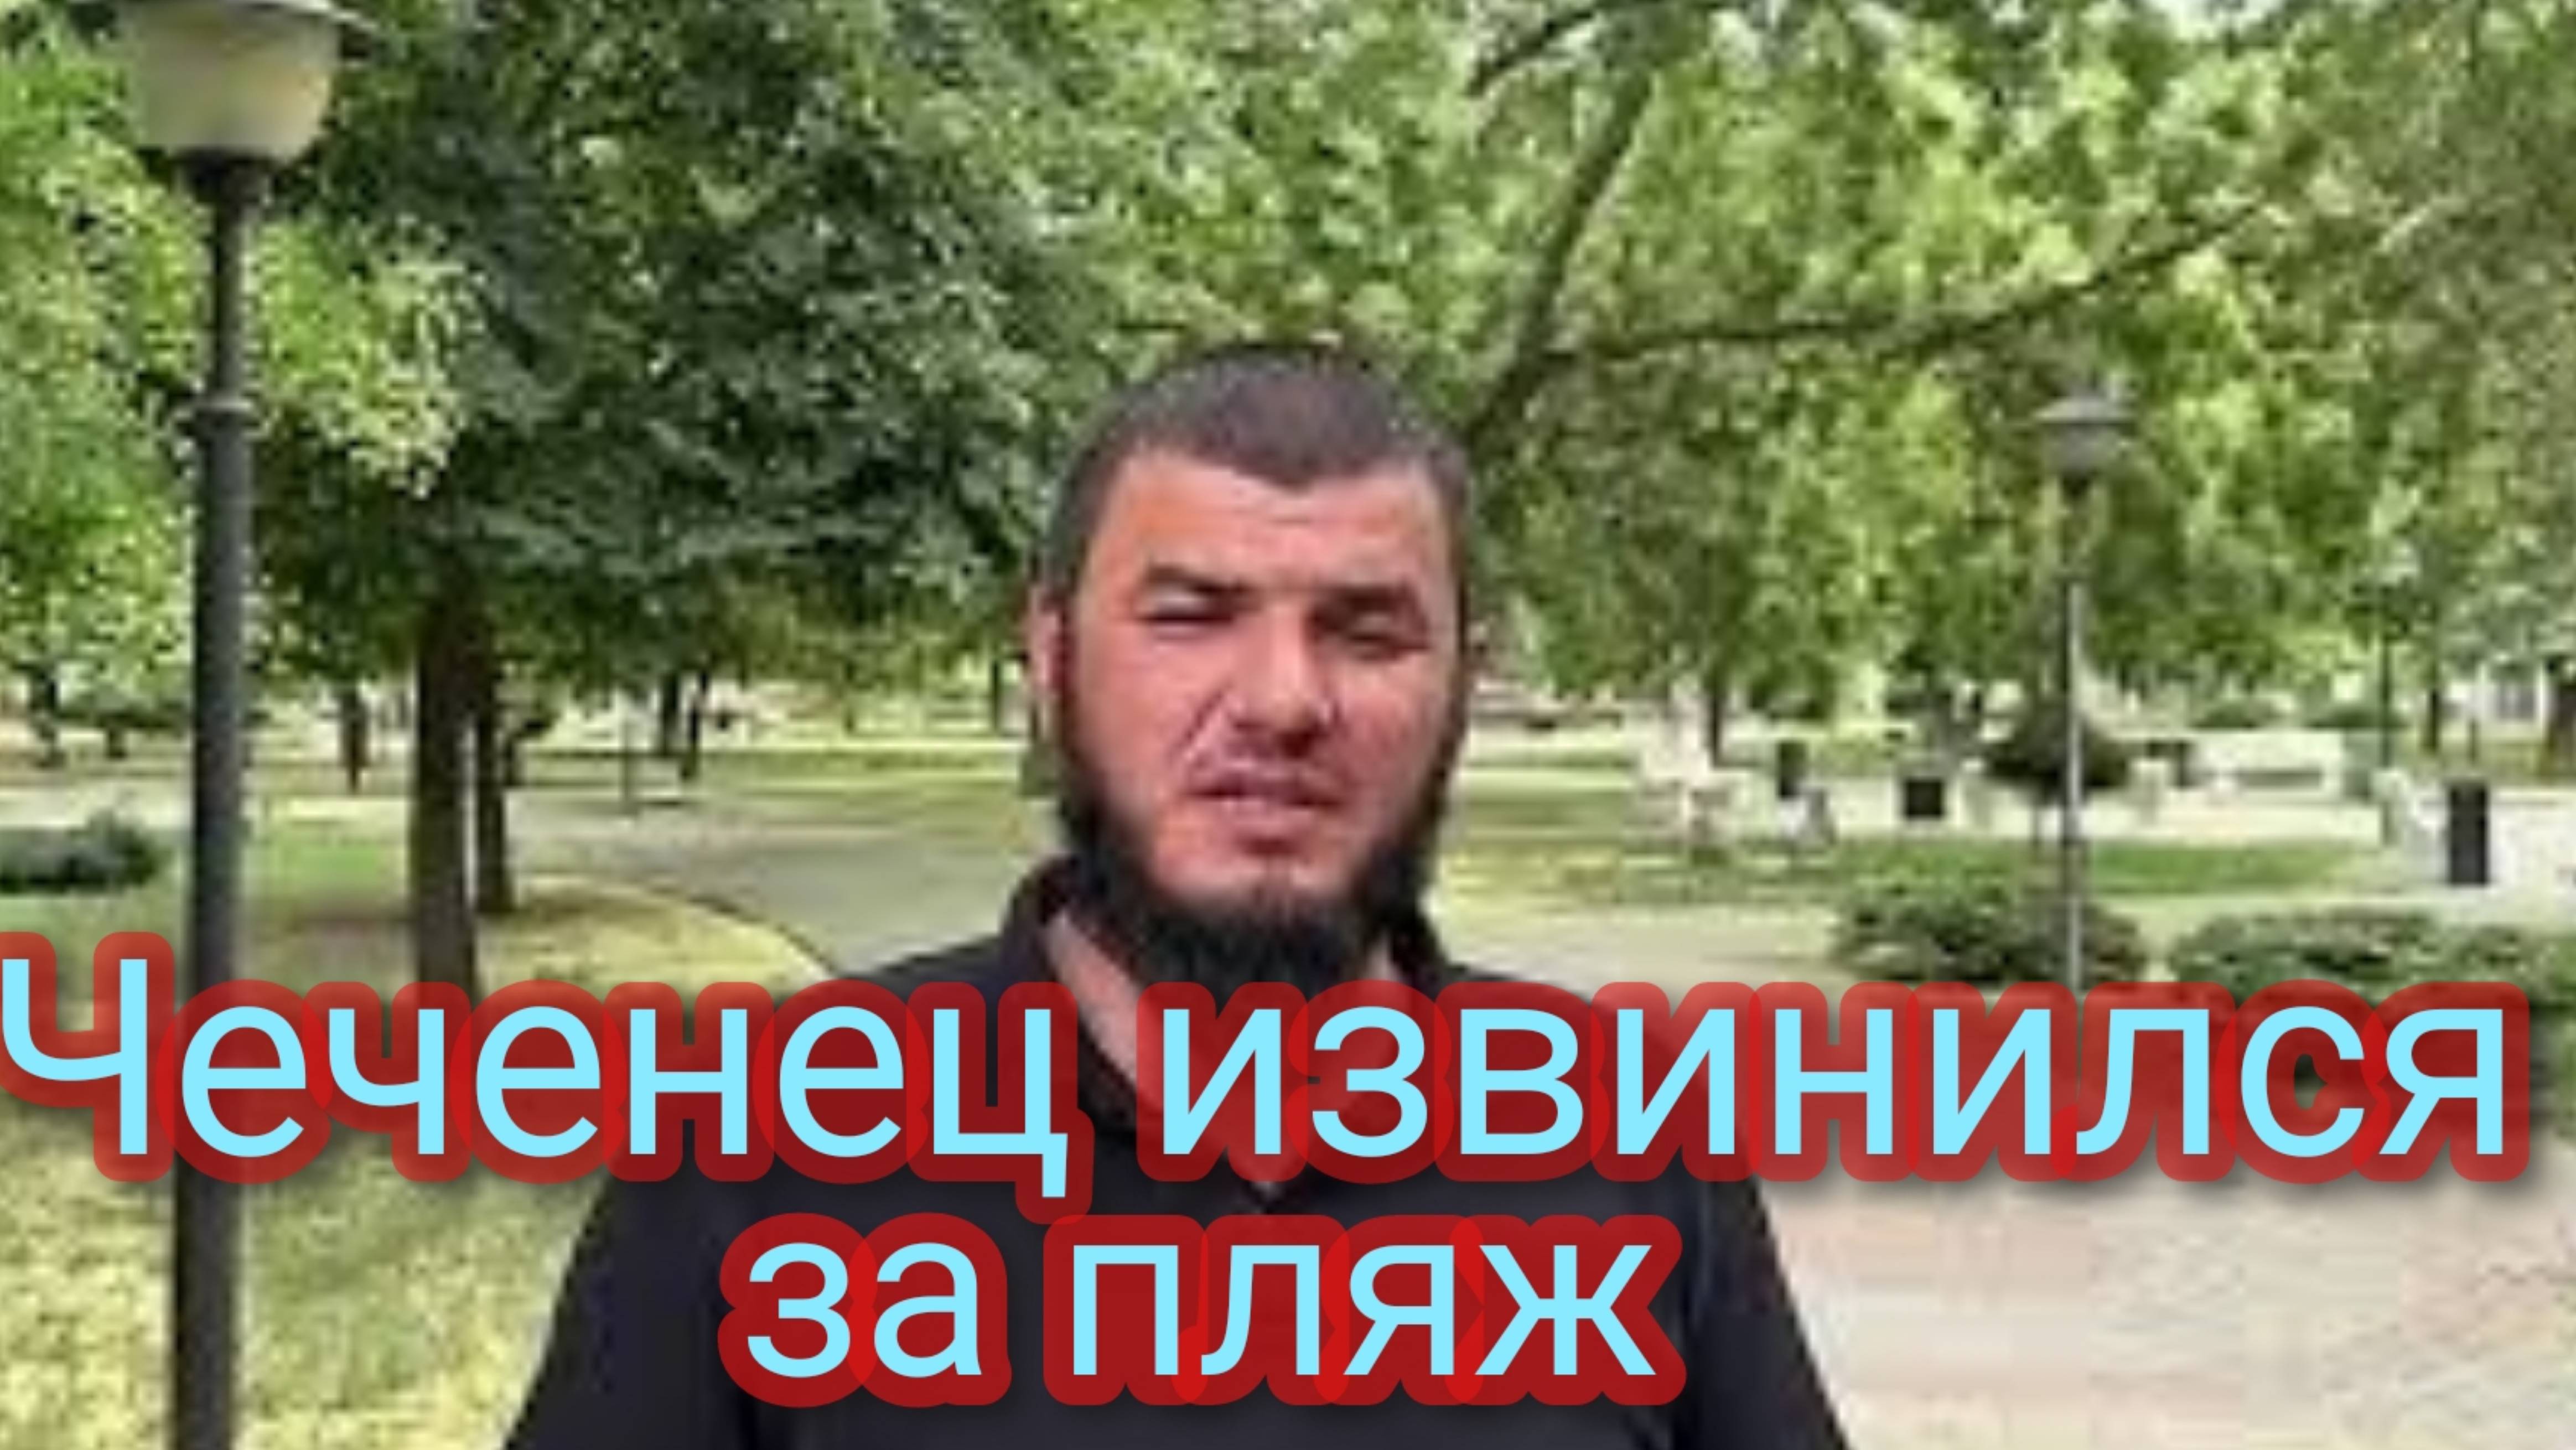 Чеченец, выехавший на «Лексусе» на пляж извинился